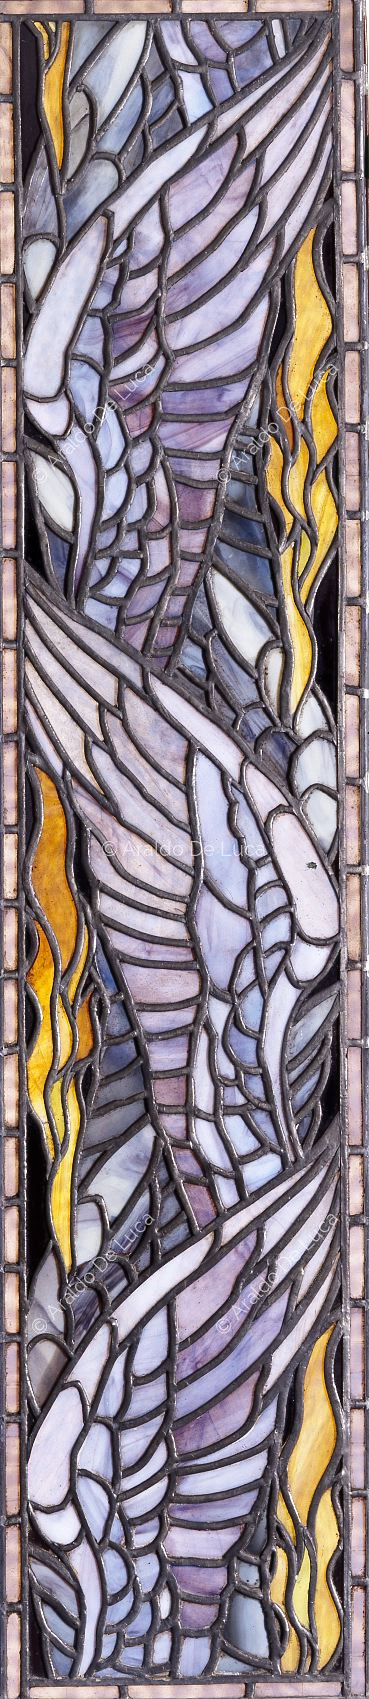 Buntglasfenster mit geometrischem Motiv und Flügeln